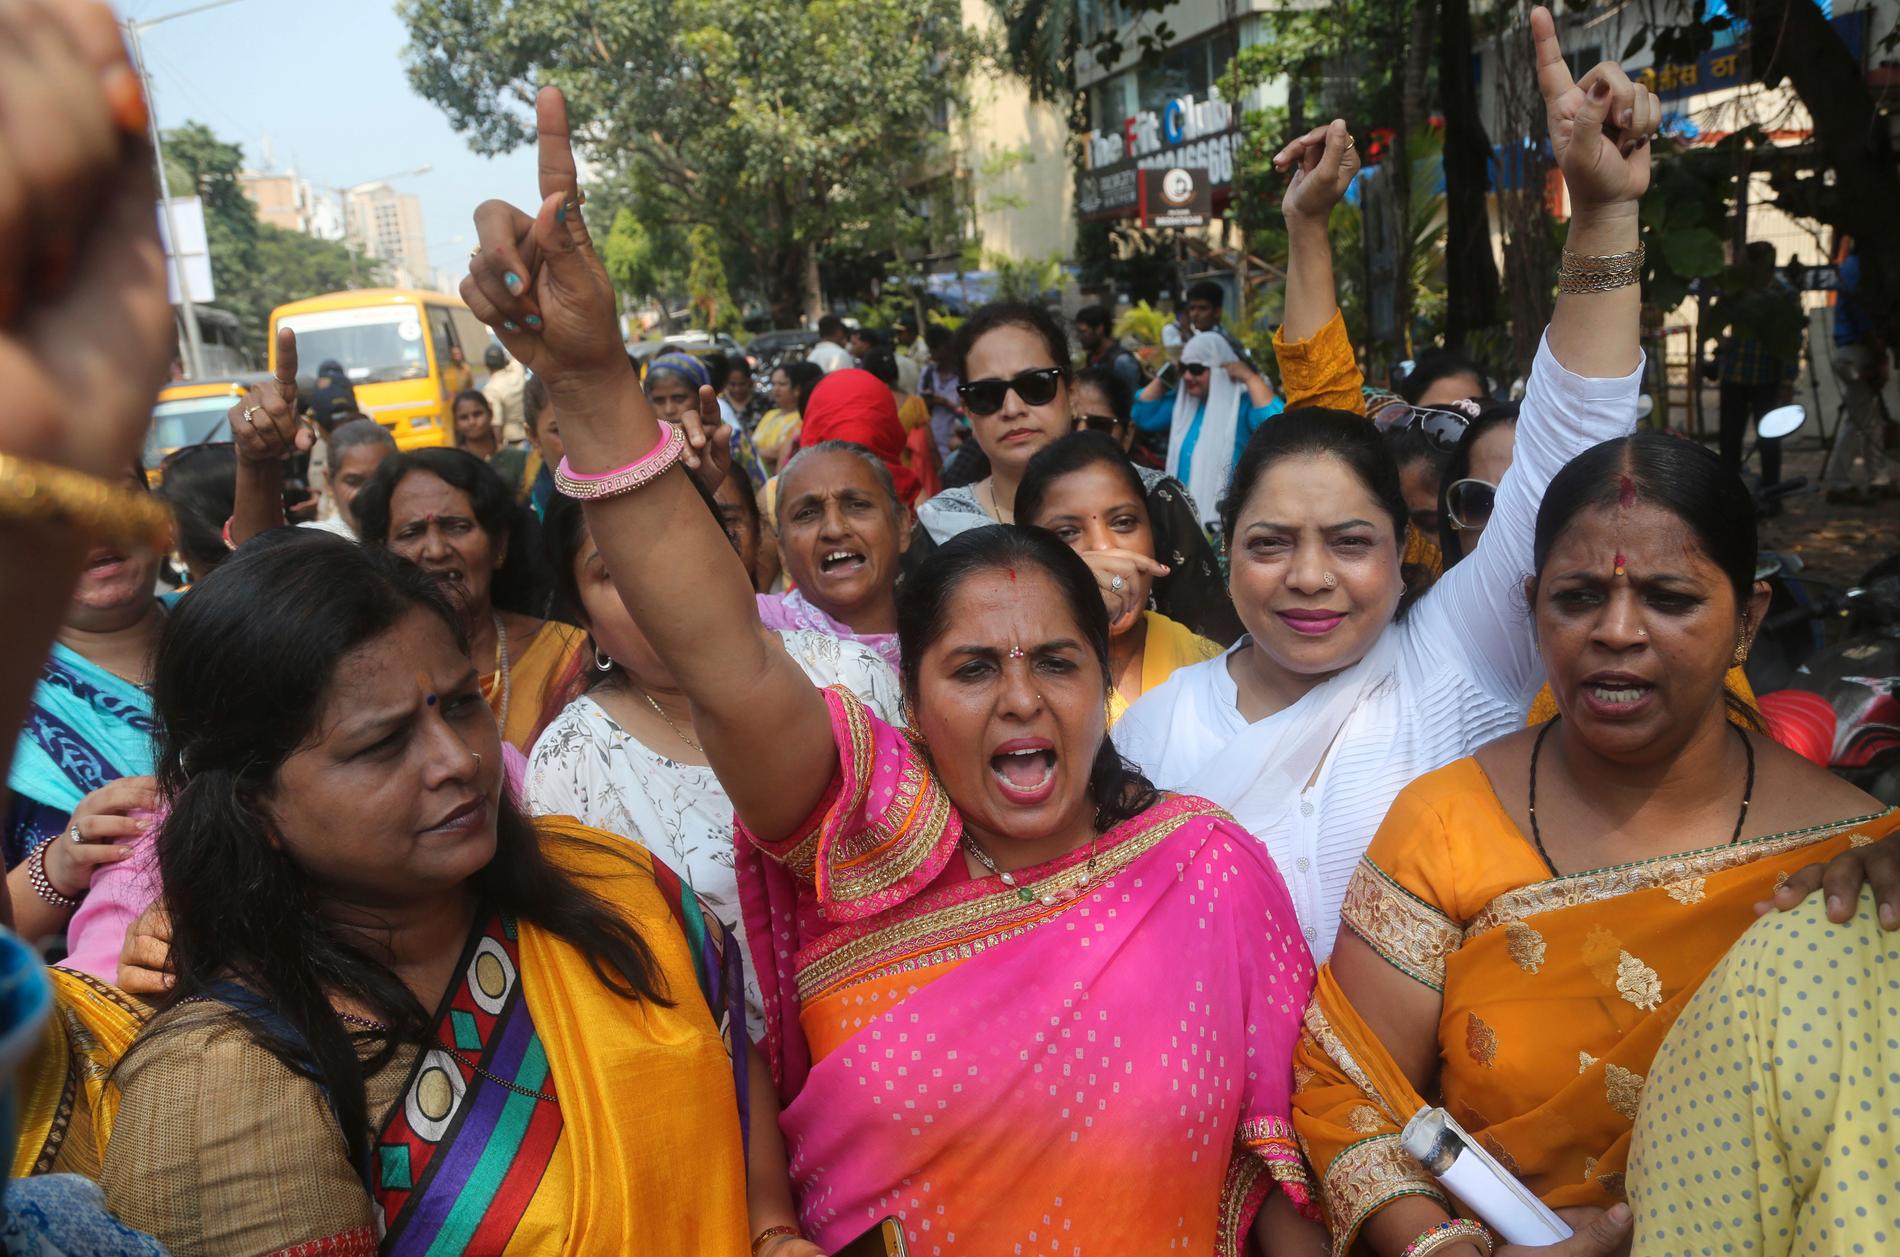 Aktivister från Bombay demonstrerar till stöd för skådespelerskan Tanushree Dutta, som i oktober i fjol anklagade sin kollega Nana Patekar för sexuellt ofredande.